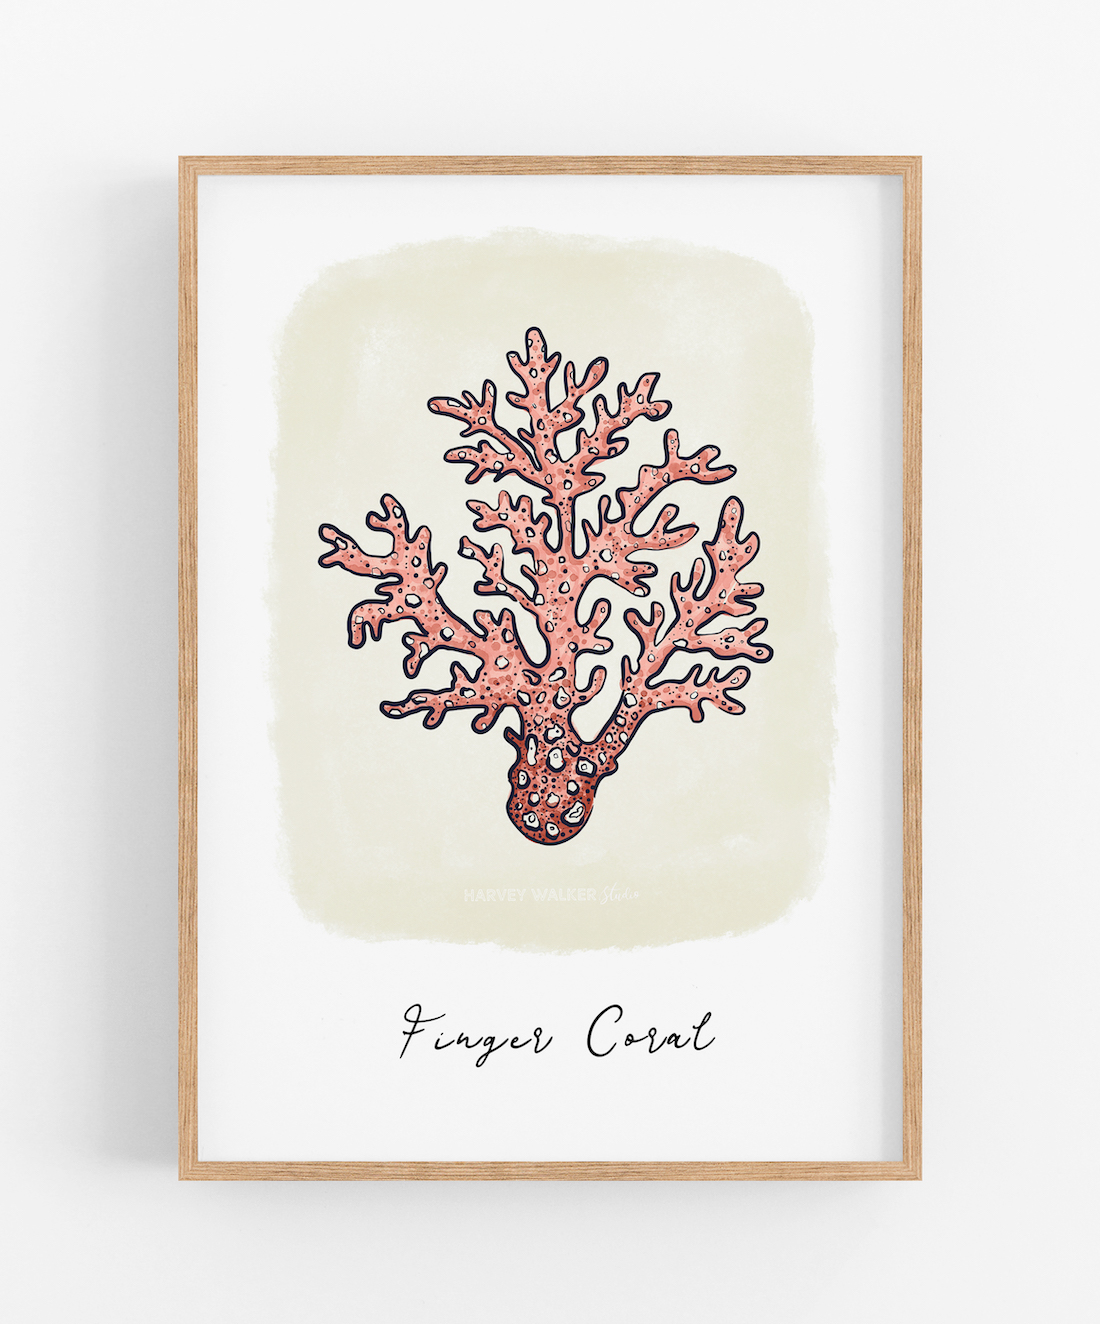 Finger coral artwork